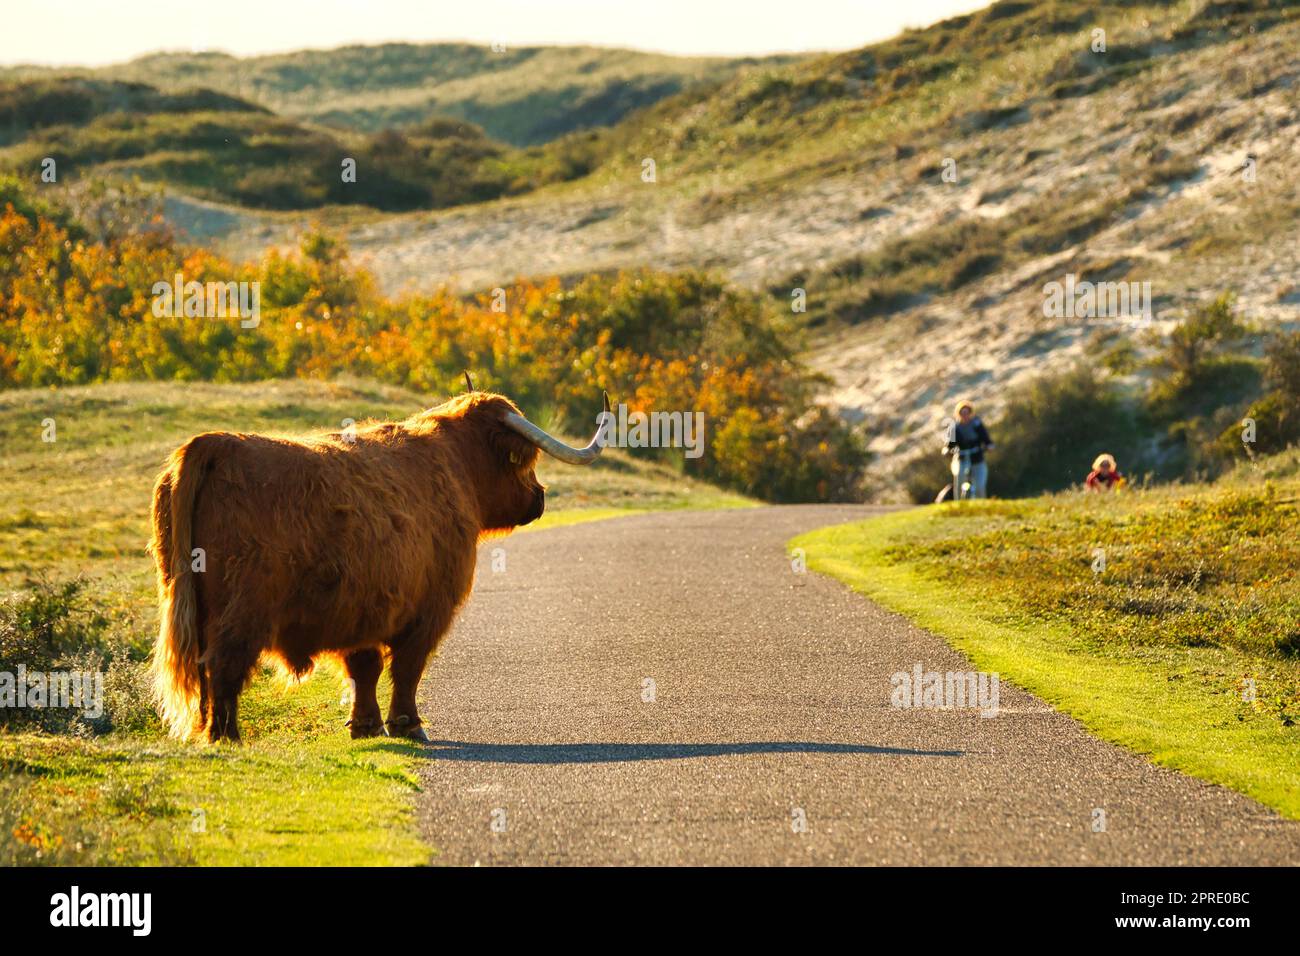 Ein schottisches Highland-Vieh im nordholländischen Dünenreservat, das neben einem Pfad steht und auf zwei Touristen mit dem Fahrrad schaut. Schoorlse Duinen, Niederlande. Stockfoto